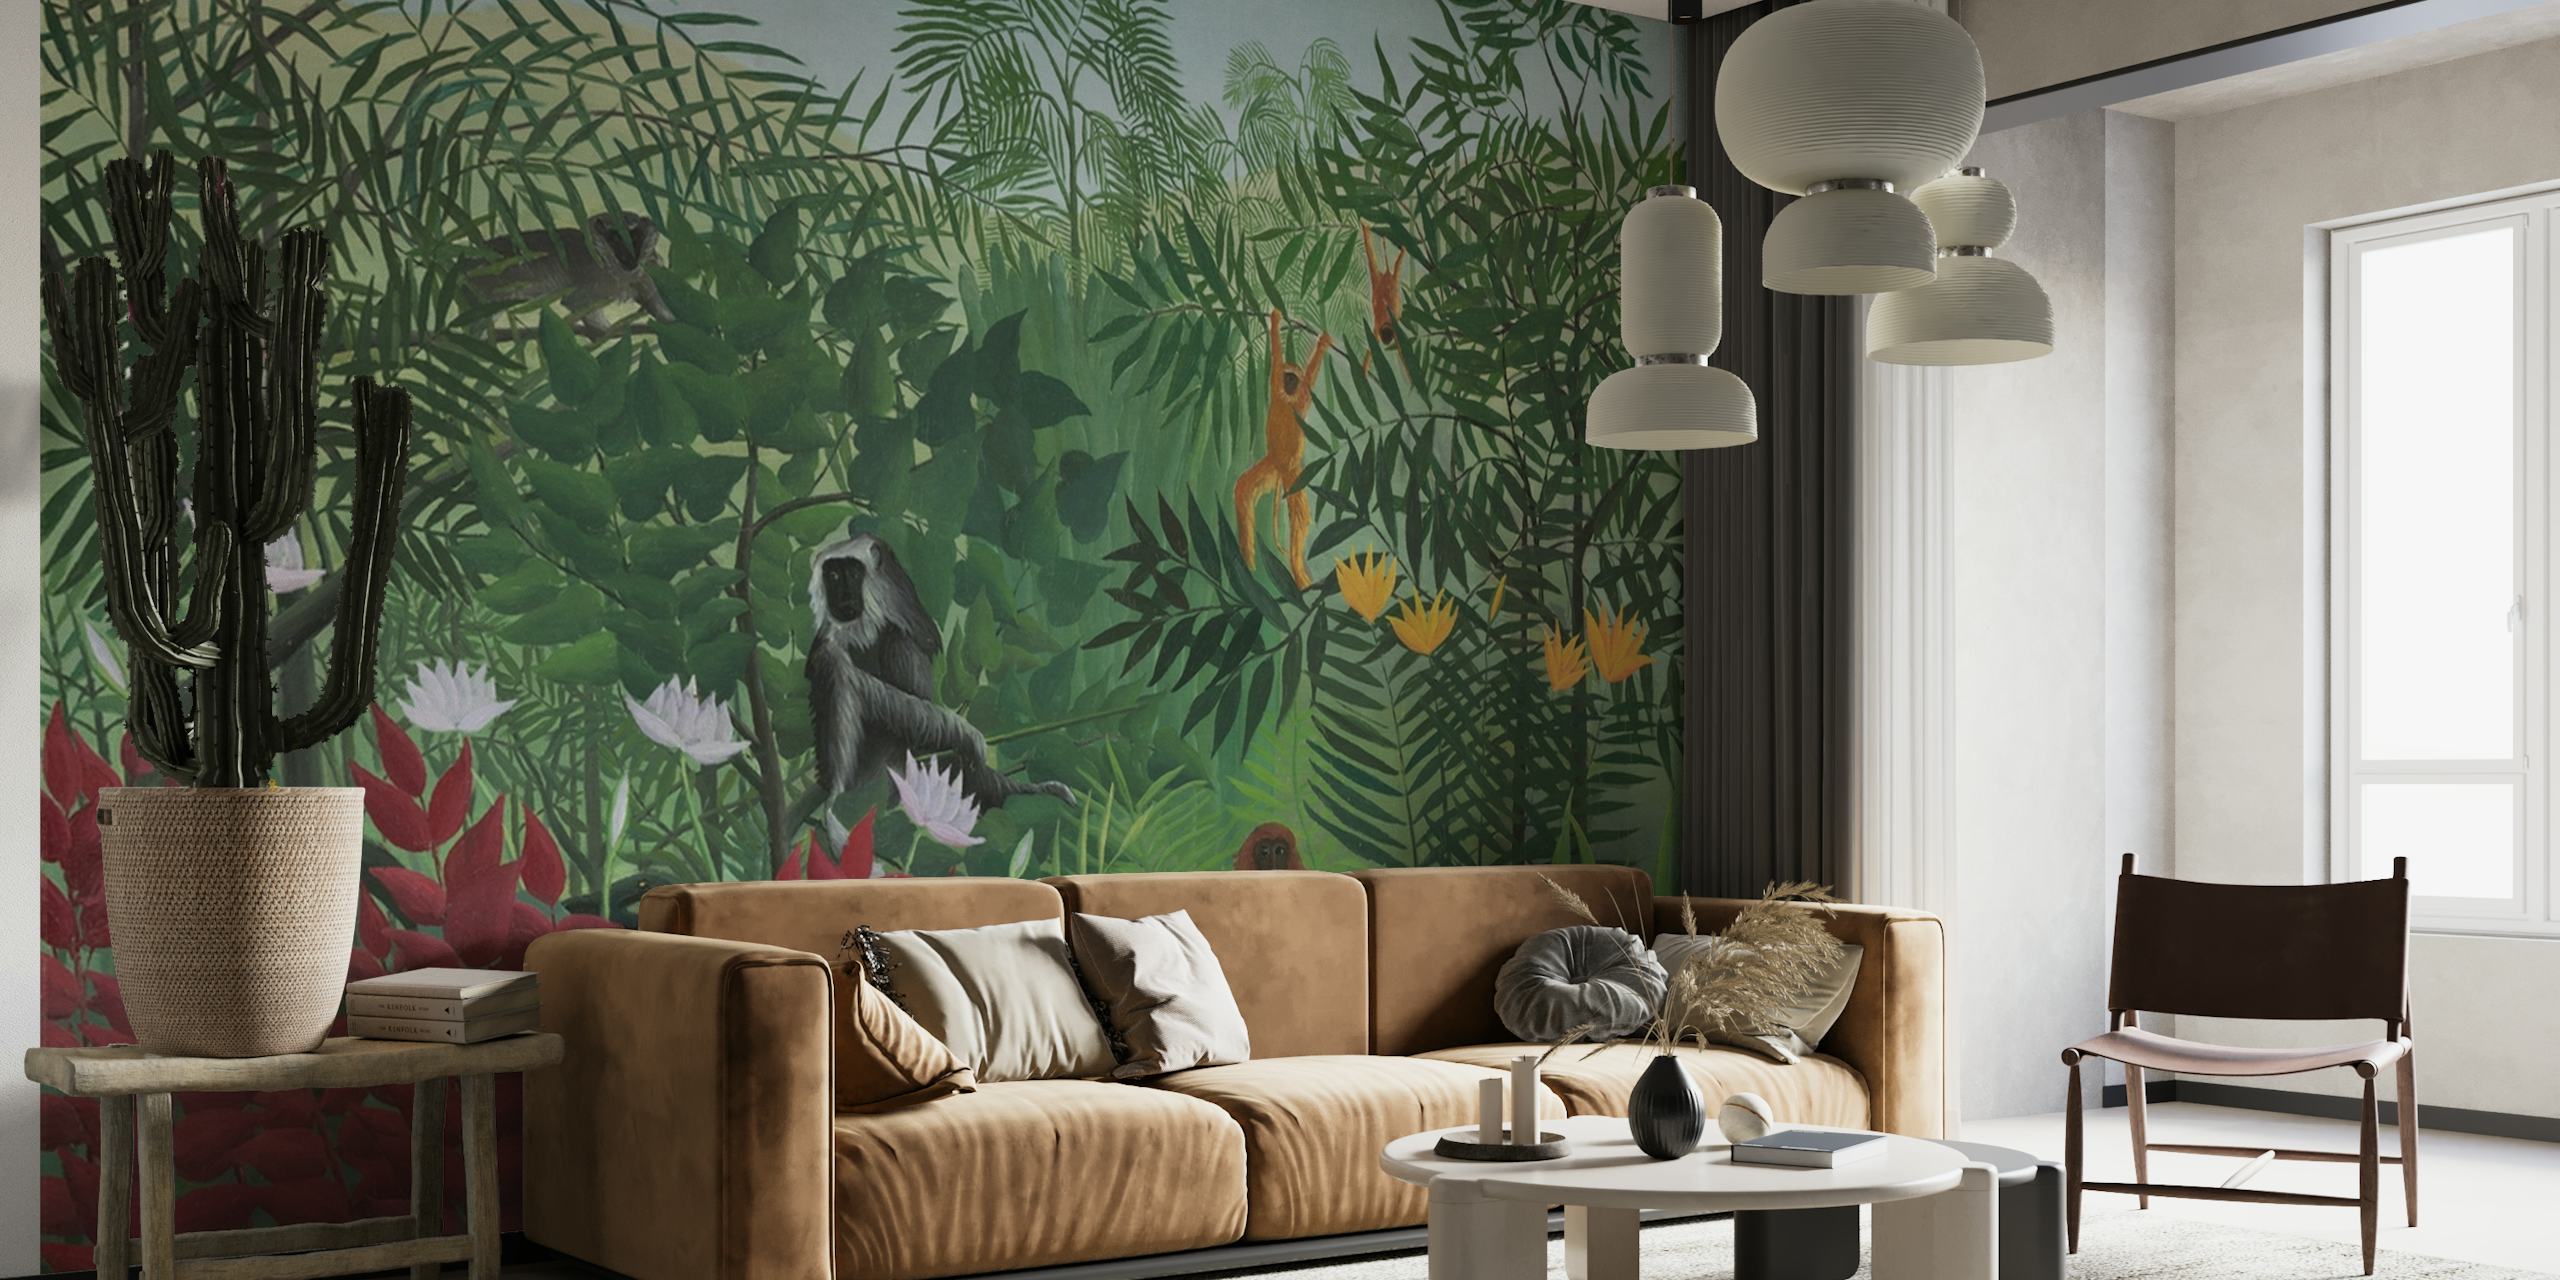 Zidna slika koja prikazuje prizor tropske šume s majmunima, inspirirana umjetničkim stilom Henrija Rousseaua.